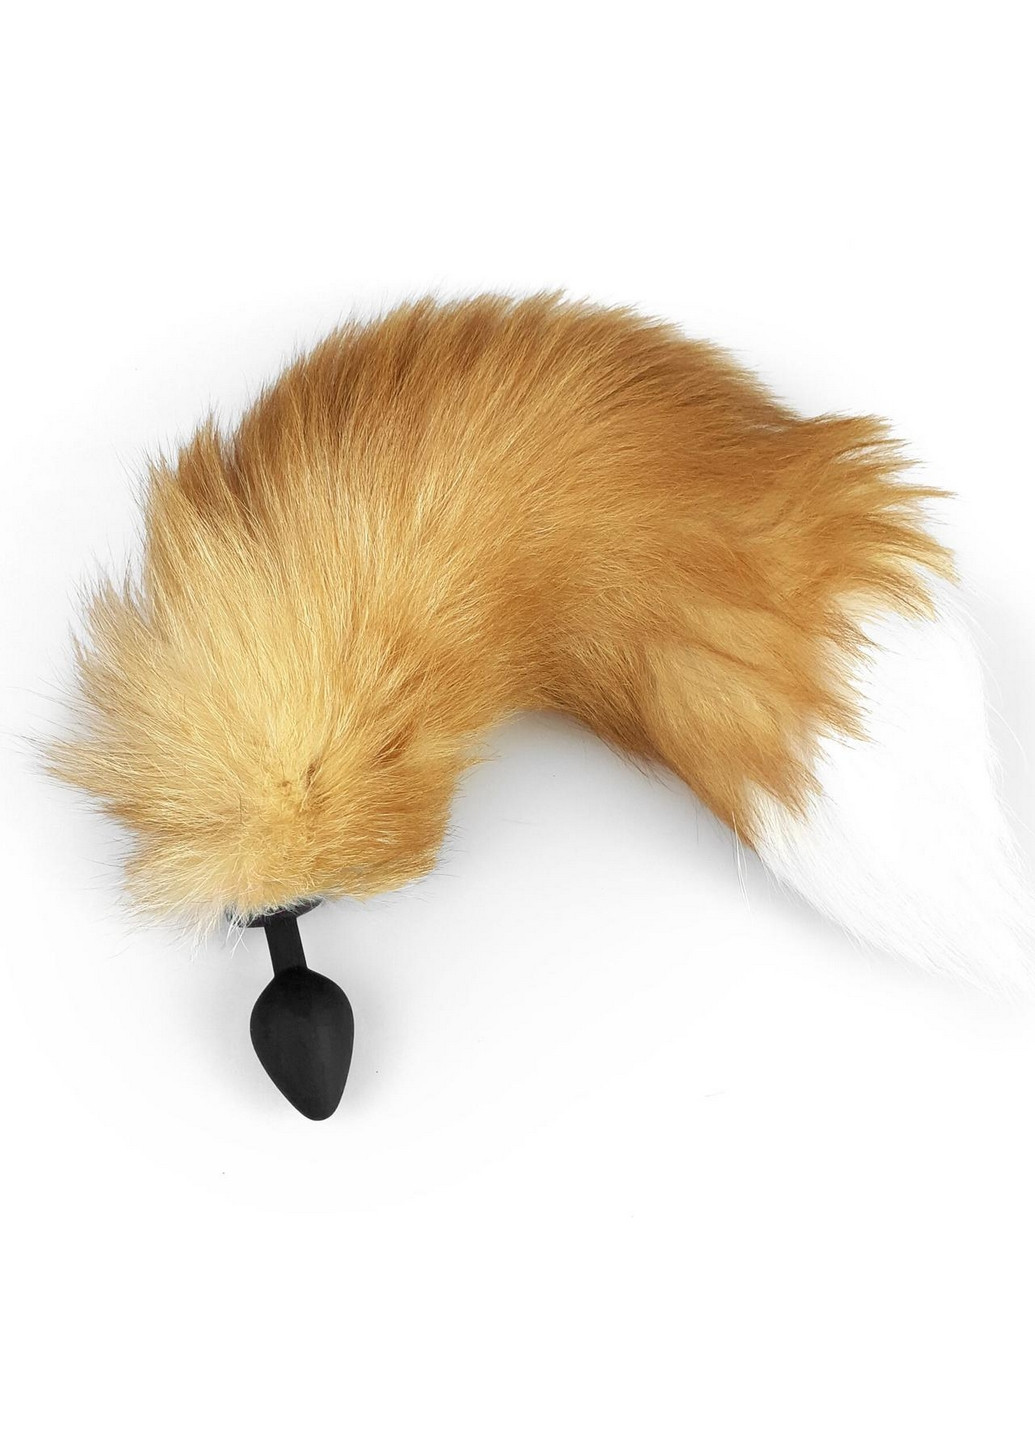 Силиконовая анальная пробка с хвостом из натурального меха size M Foxy fox Art of Sex (260414312)